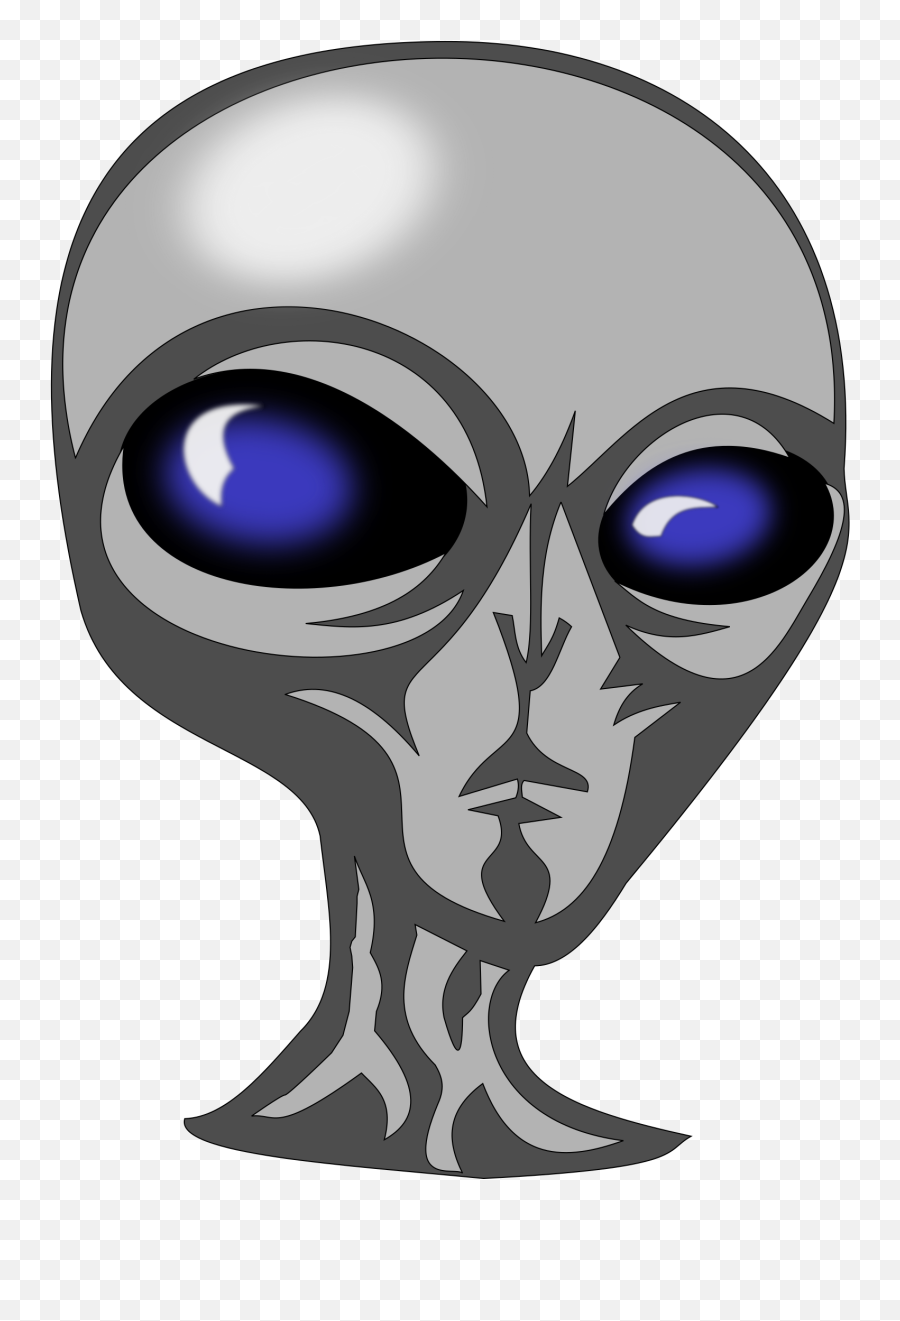 Free Alien Png Transparent Images Download Free Clip Art - Alien Public Domain Emoji,Xenomorph Emoticon